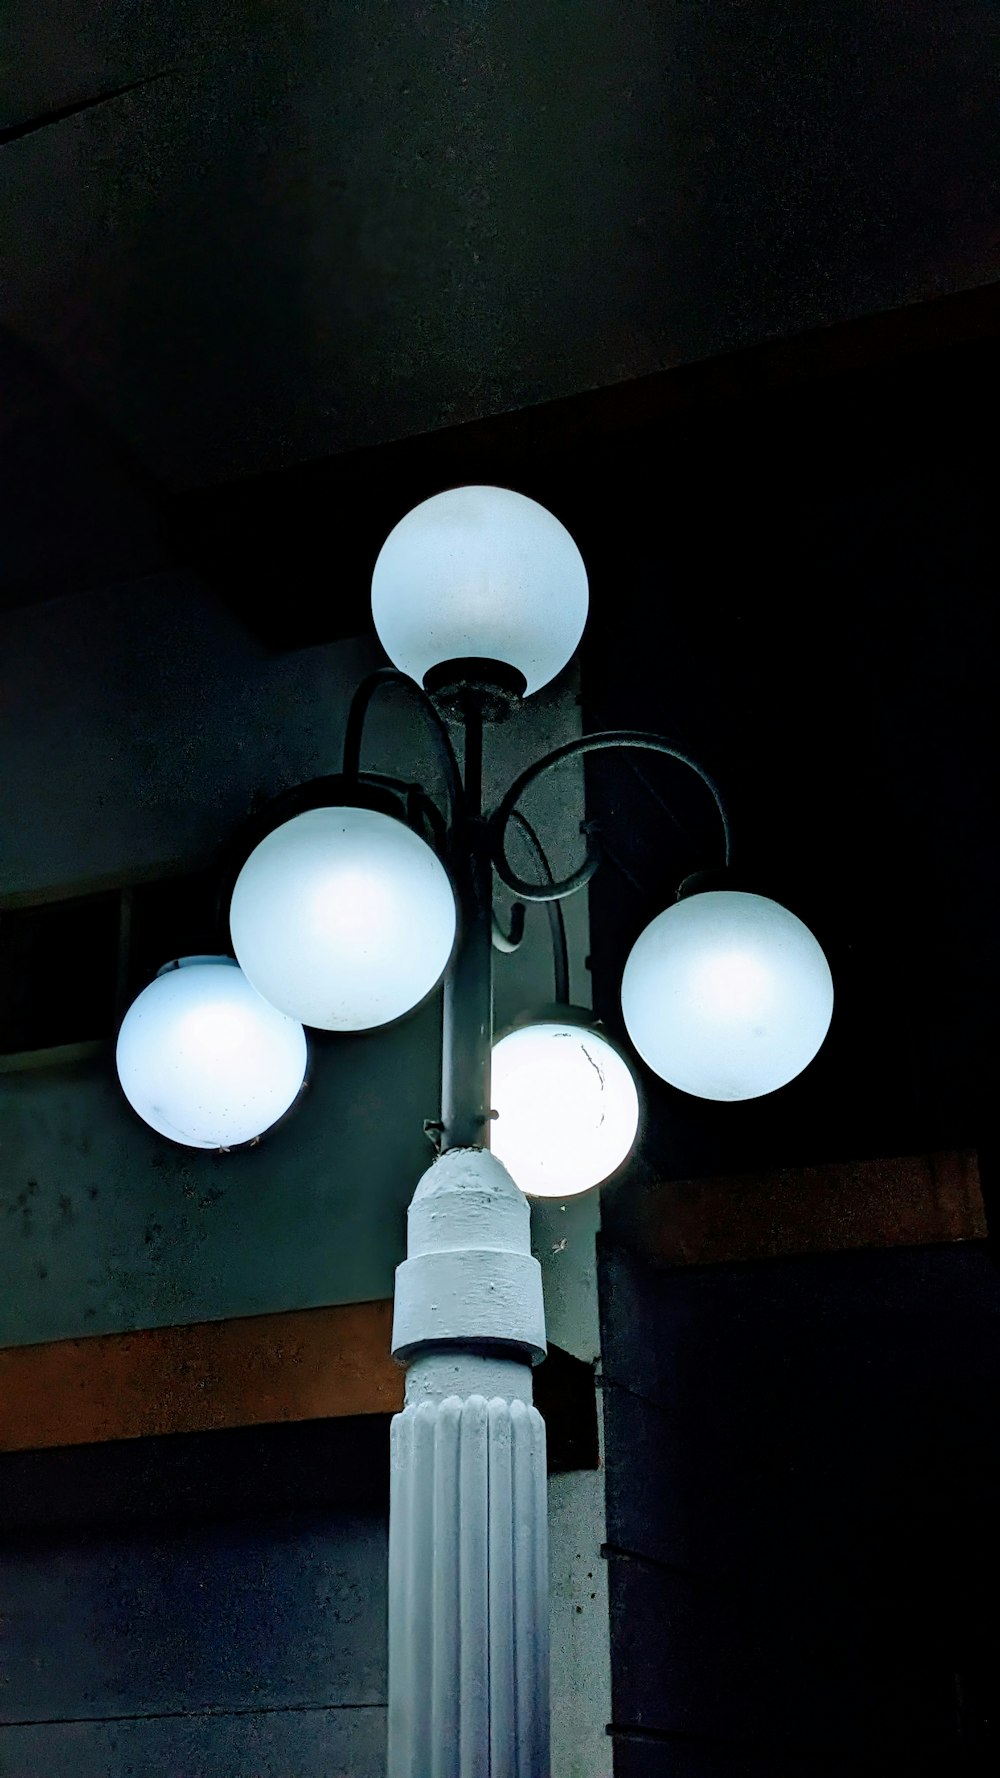 5つのライトが点灯した街路灯